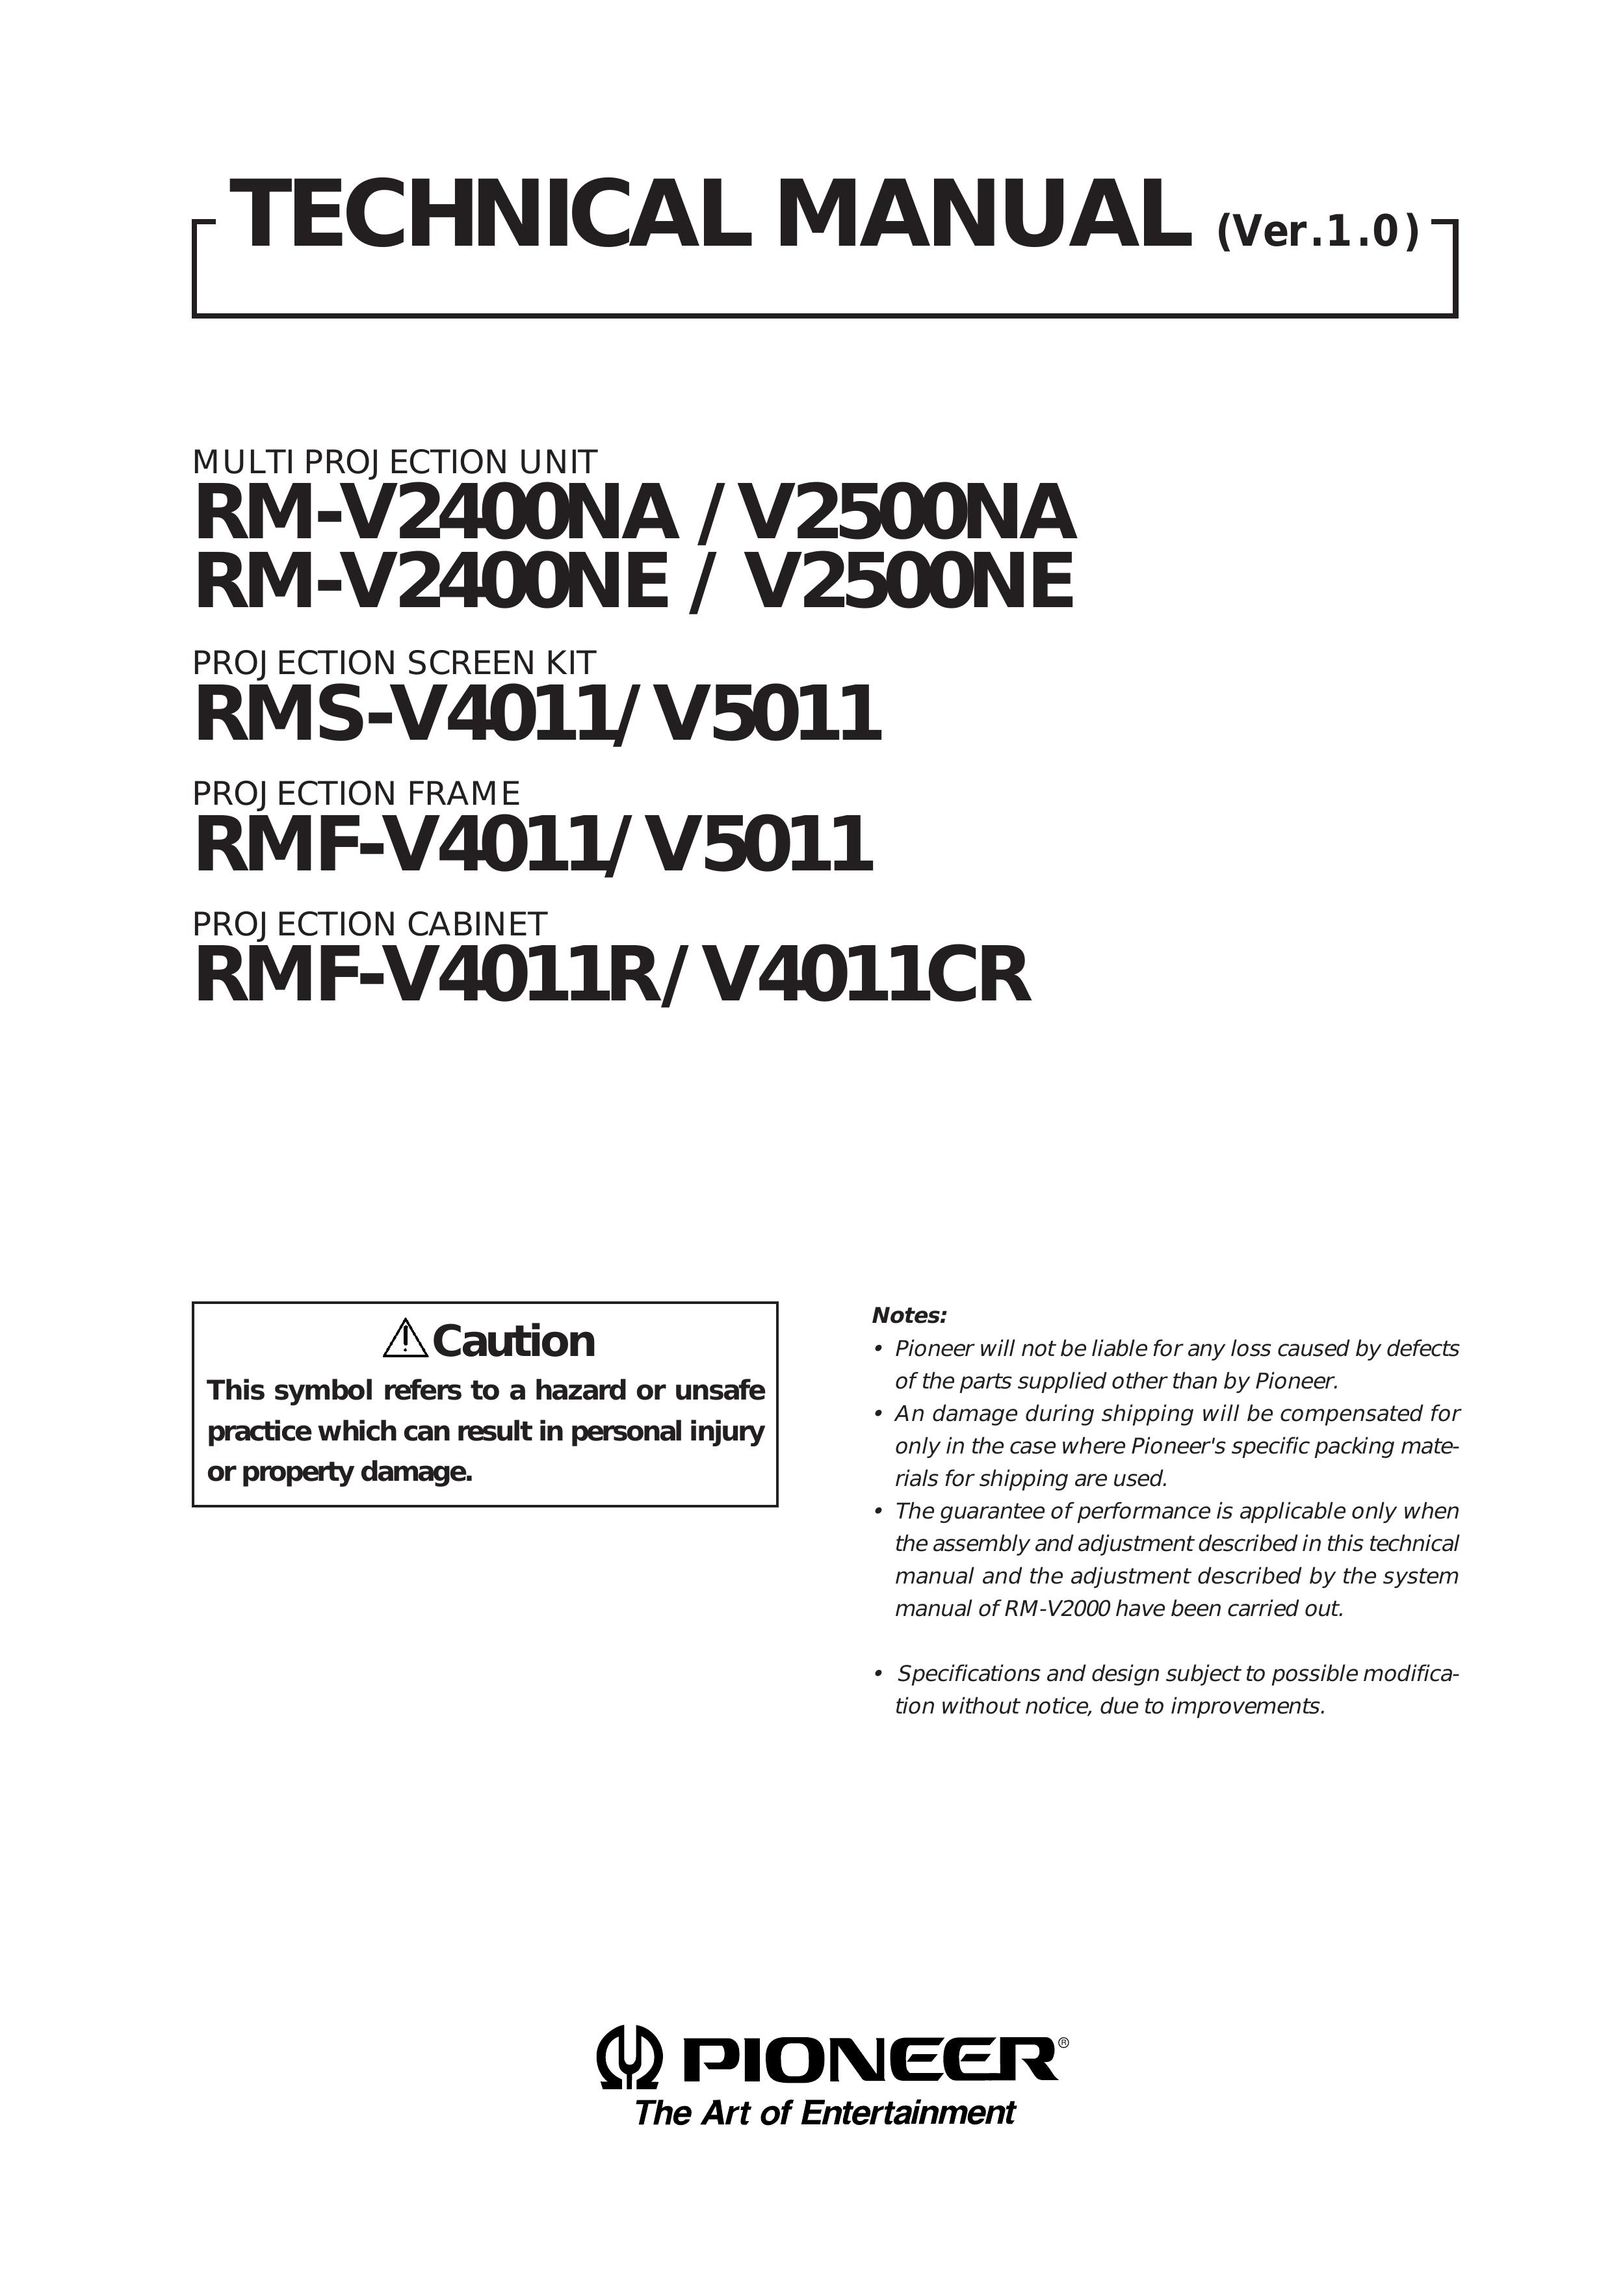 Pioneer RMF-V4011 Projector User Manual